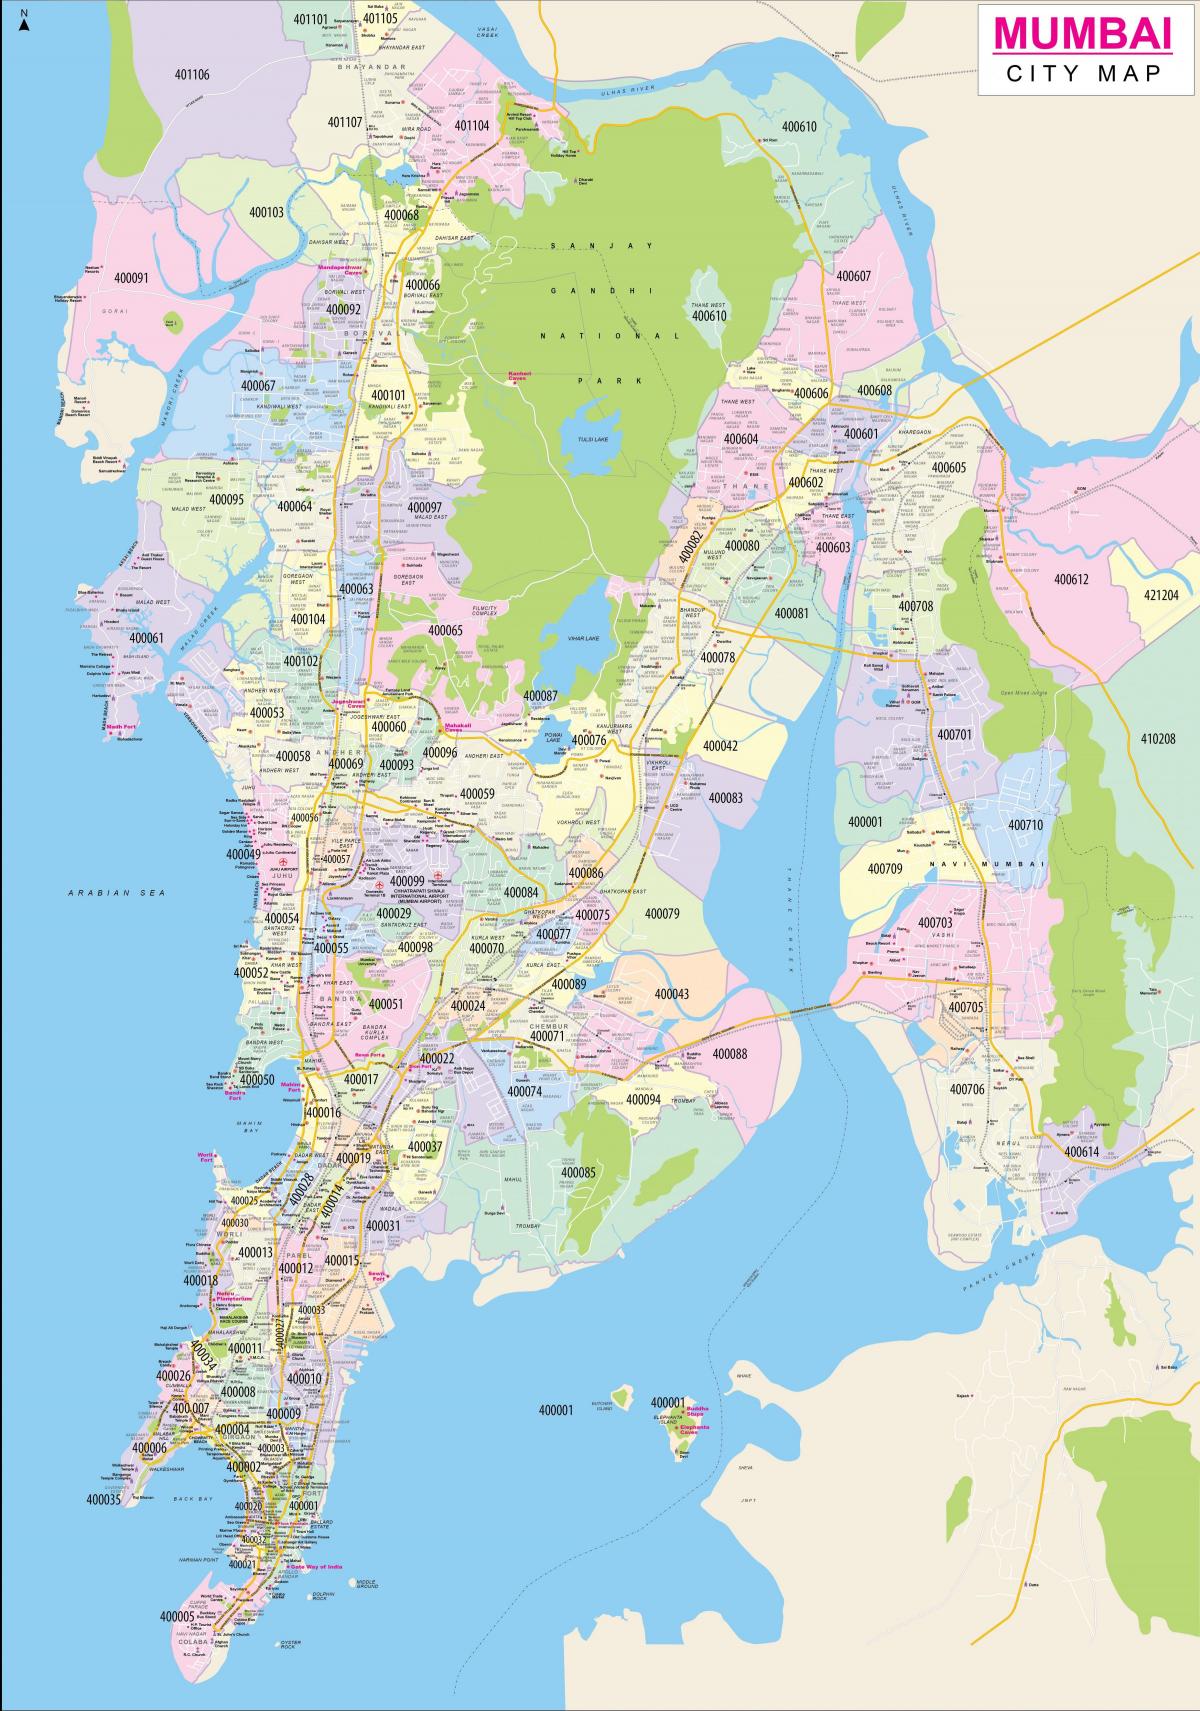 Mumbai - Bombay city map